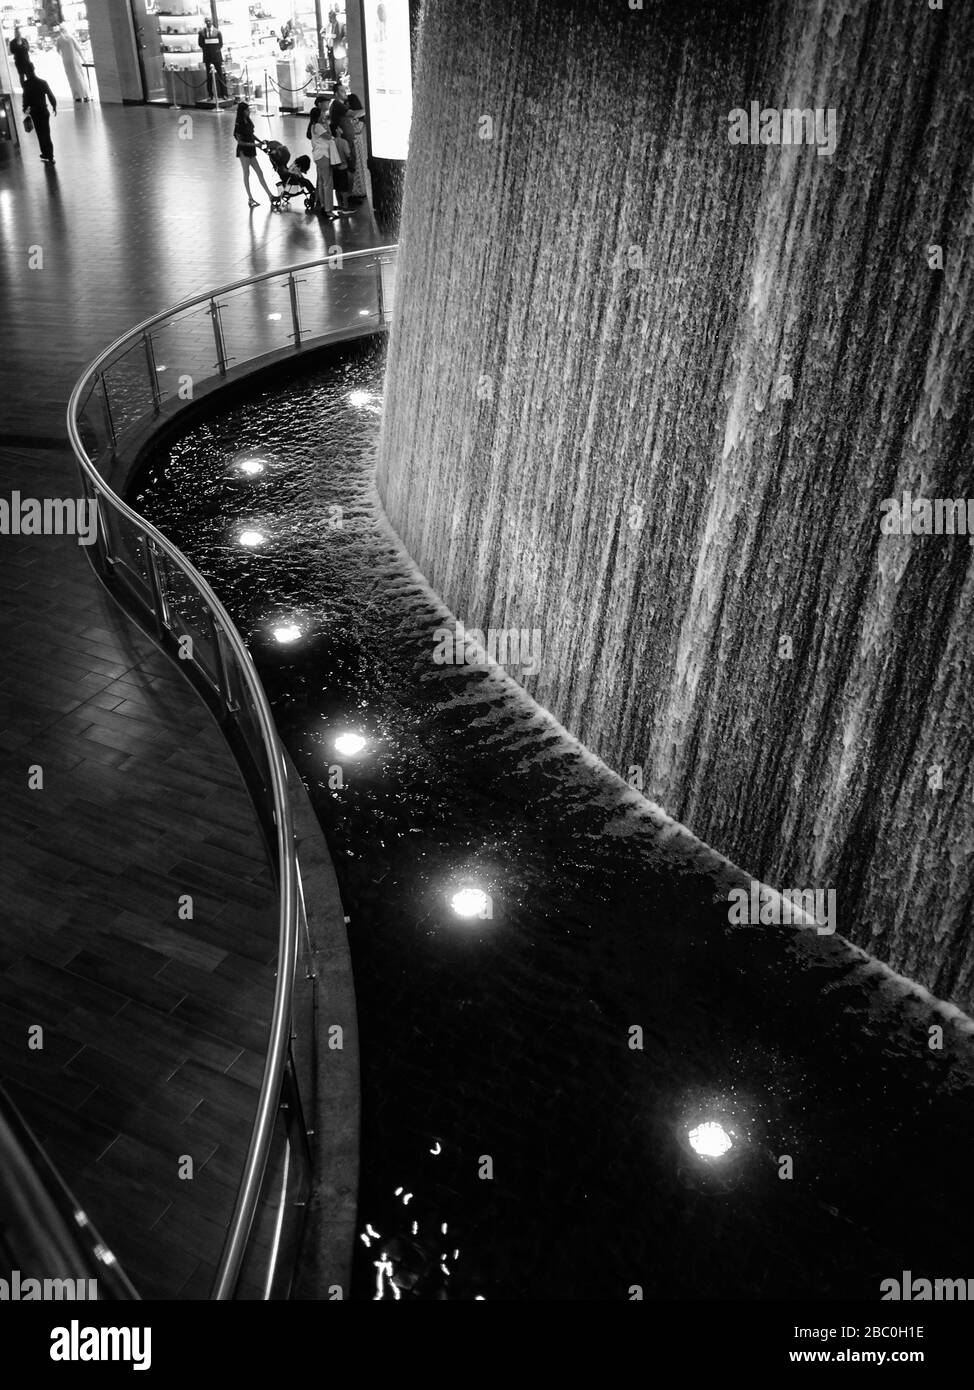 La cascade de Pearl Divers à l'intérieur du gigantesque centre commercial de Dubaï, dans le centre-ville de Dubaï, aux Émirats arabes Unis. Banque D'Images